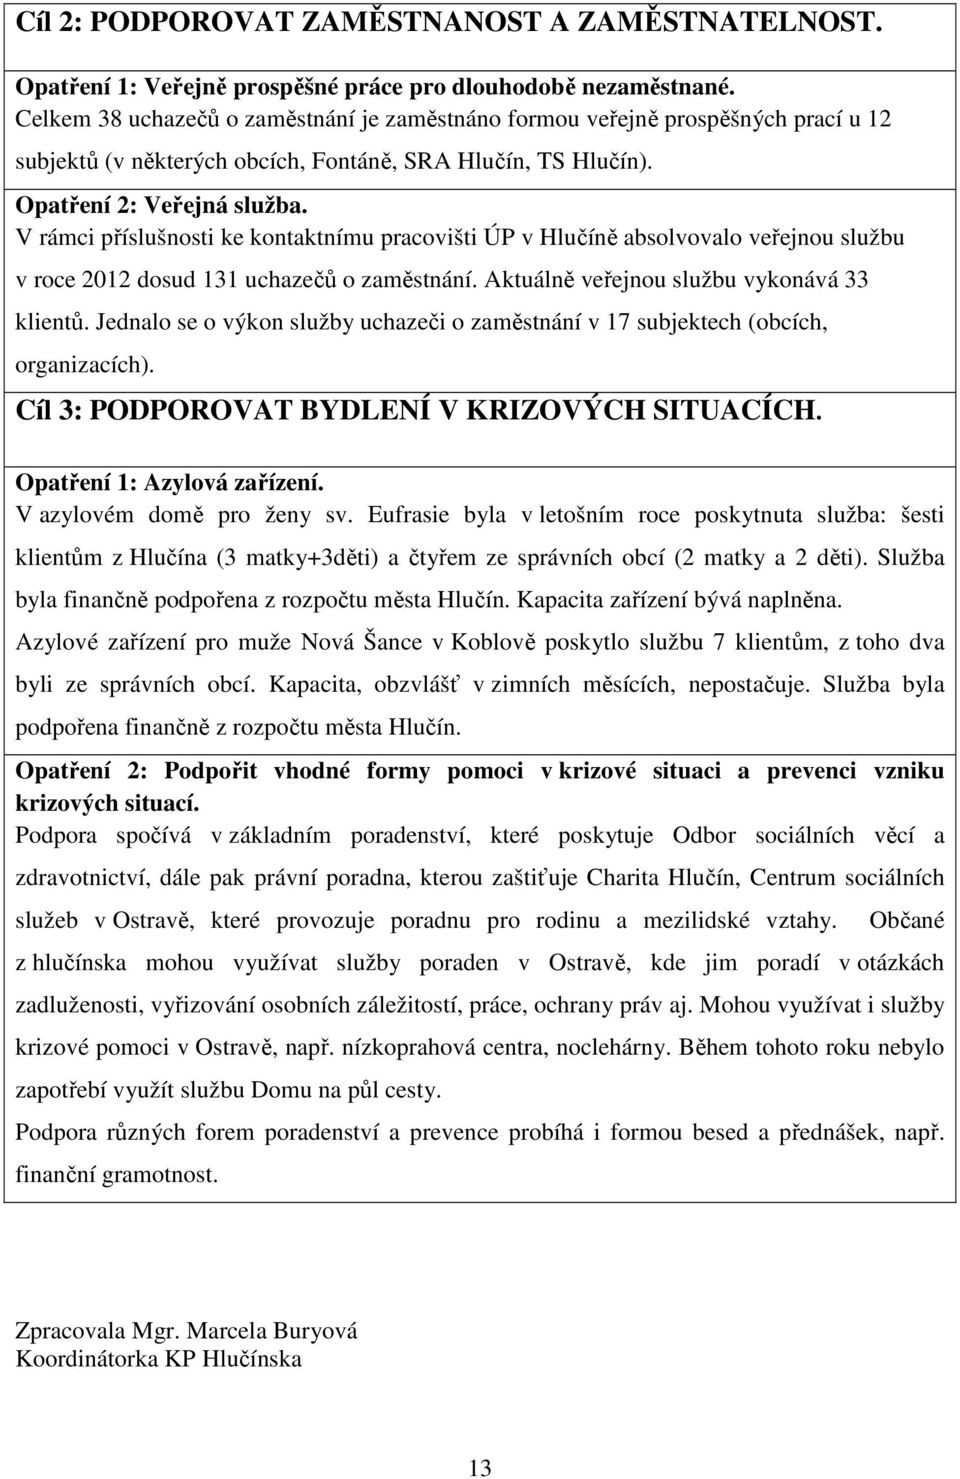 V rámci příslušnosti ke kontaktnímu pracovišti ÚP v Hlučíně absolvovalo veřejnou službu v roce 2012 dosud 131 uchazečů o zaměstnání. Aktuálně veřejnou službu vykonává 33 klientů.